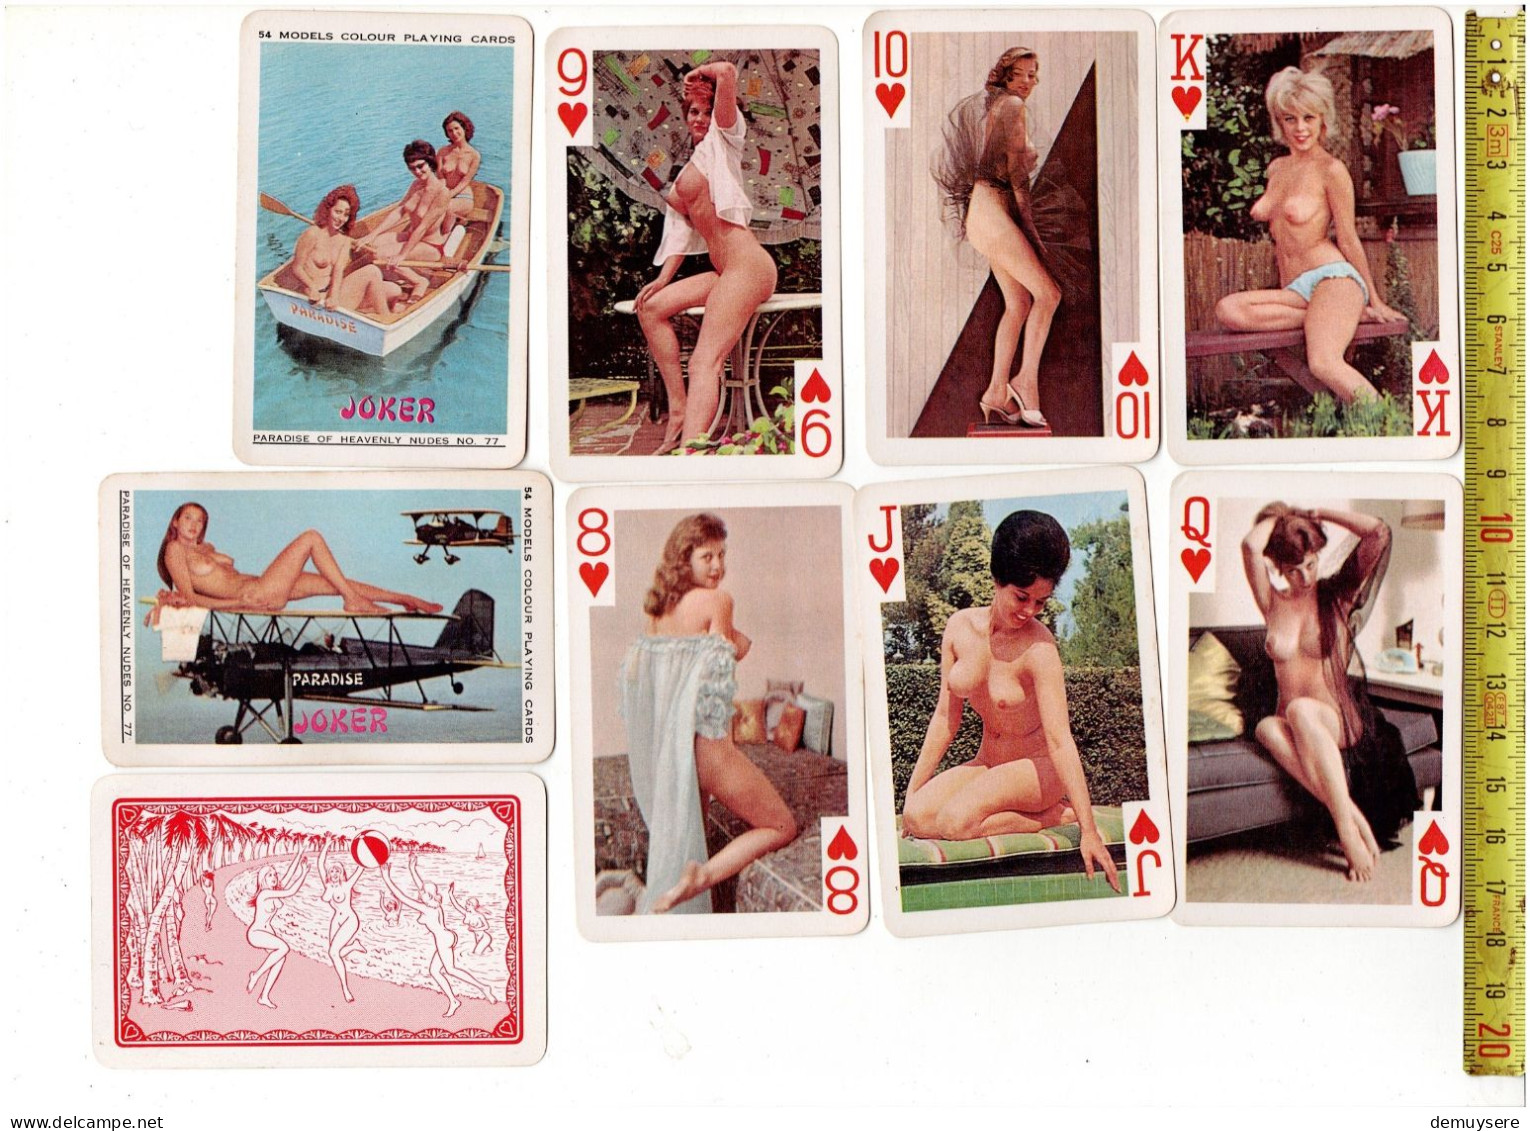 KL 3757 - MODELS COLOUR PLAYING CARDS - PARADISE OF HEAVENLY NUDES NO 77 - Cartes à Jouer Classiques